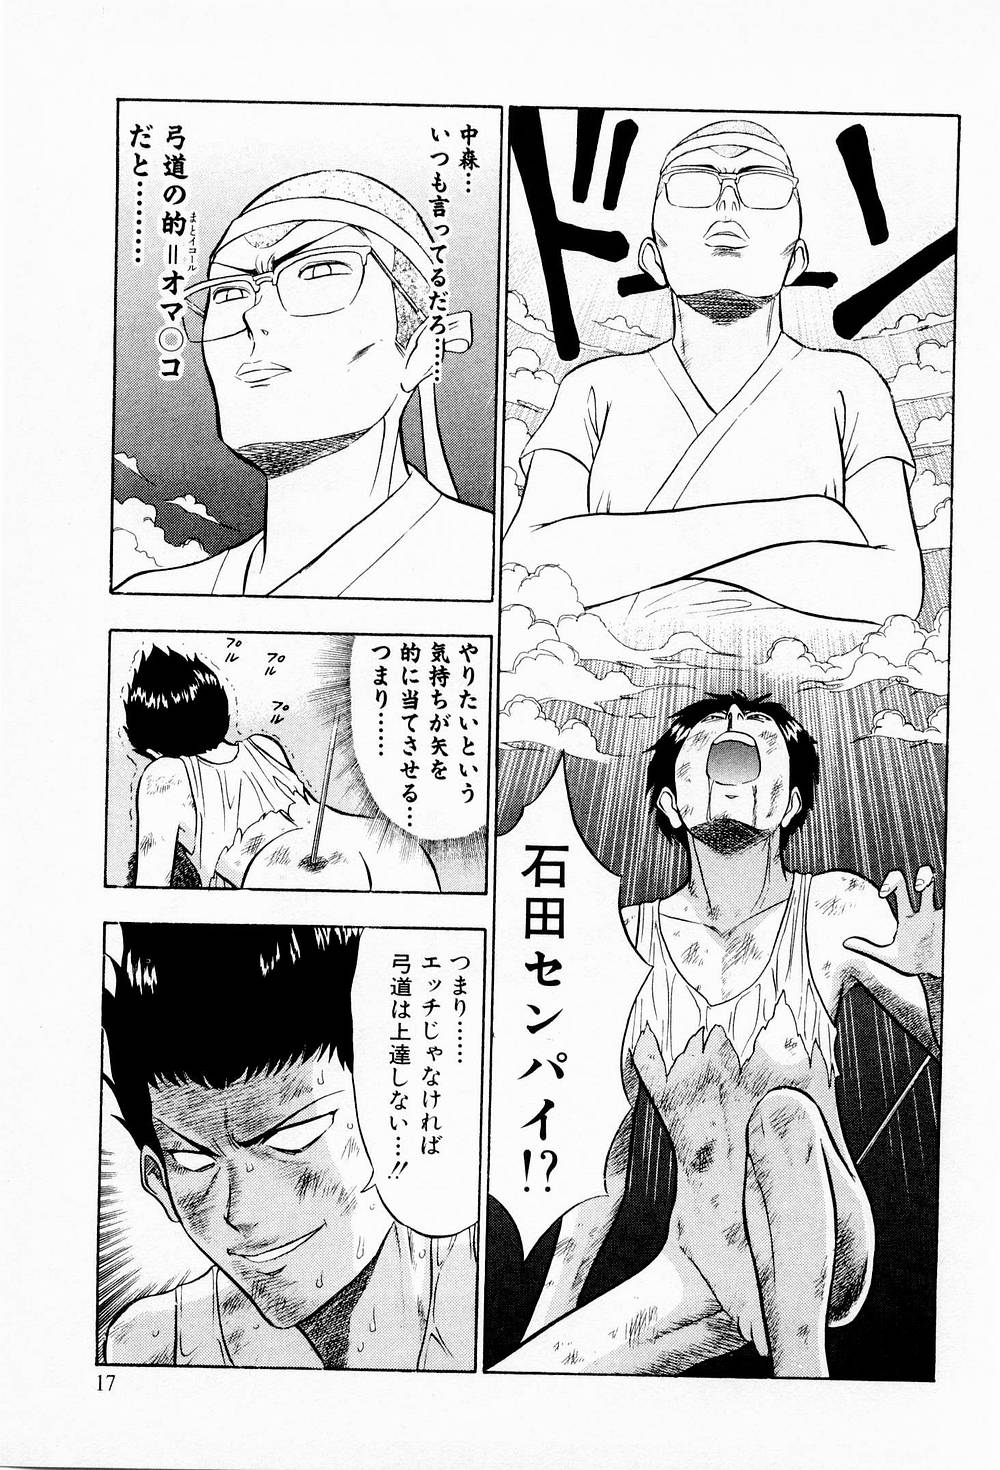 [Chosuke Nagashima] Bakusha Kyuudou Men 2 page 17 full